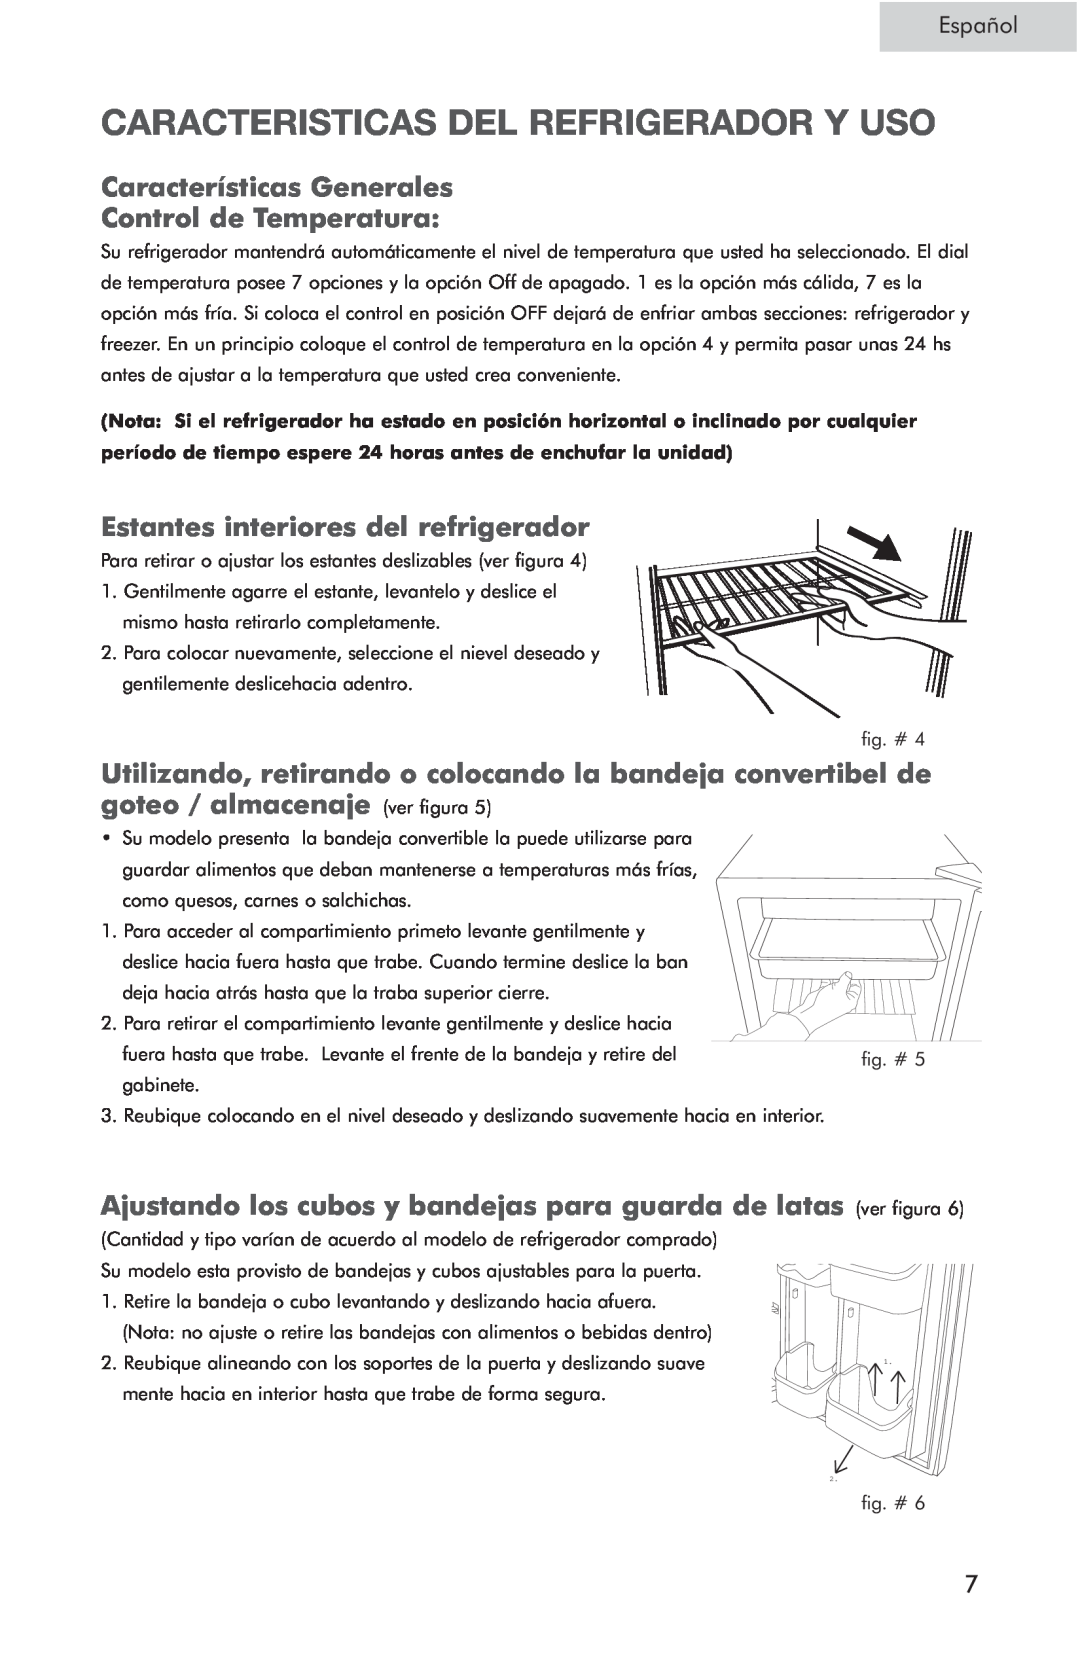 Haier HSP05WNC Caracteristicas Del Refrigerador Y Uso, Características Generales Control de Temperatura, Español 